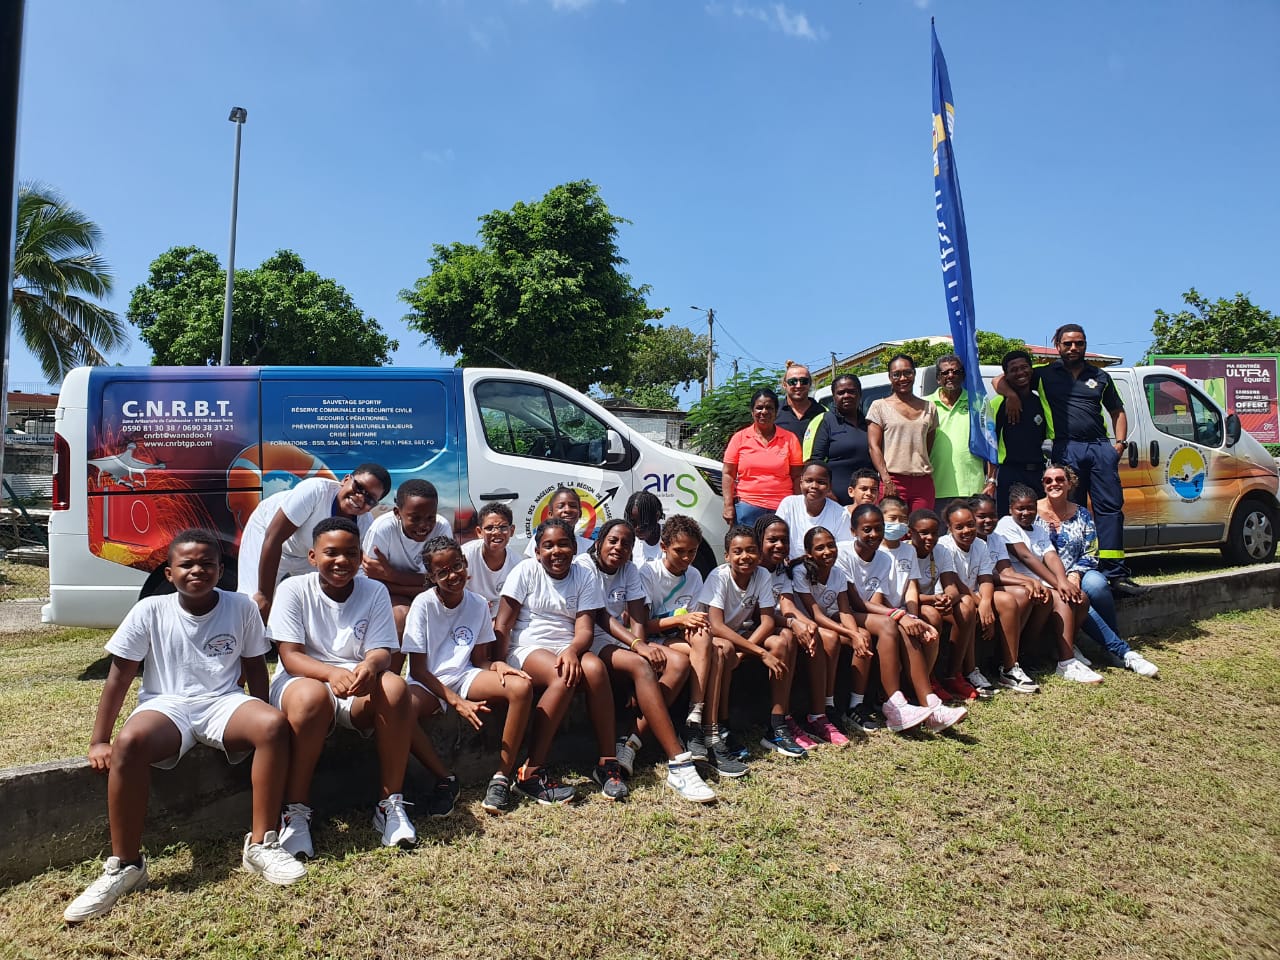     Des jeunes prennent part à la journée nationale de la résilience à Basse-Terre

